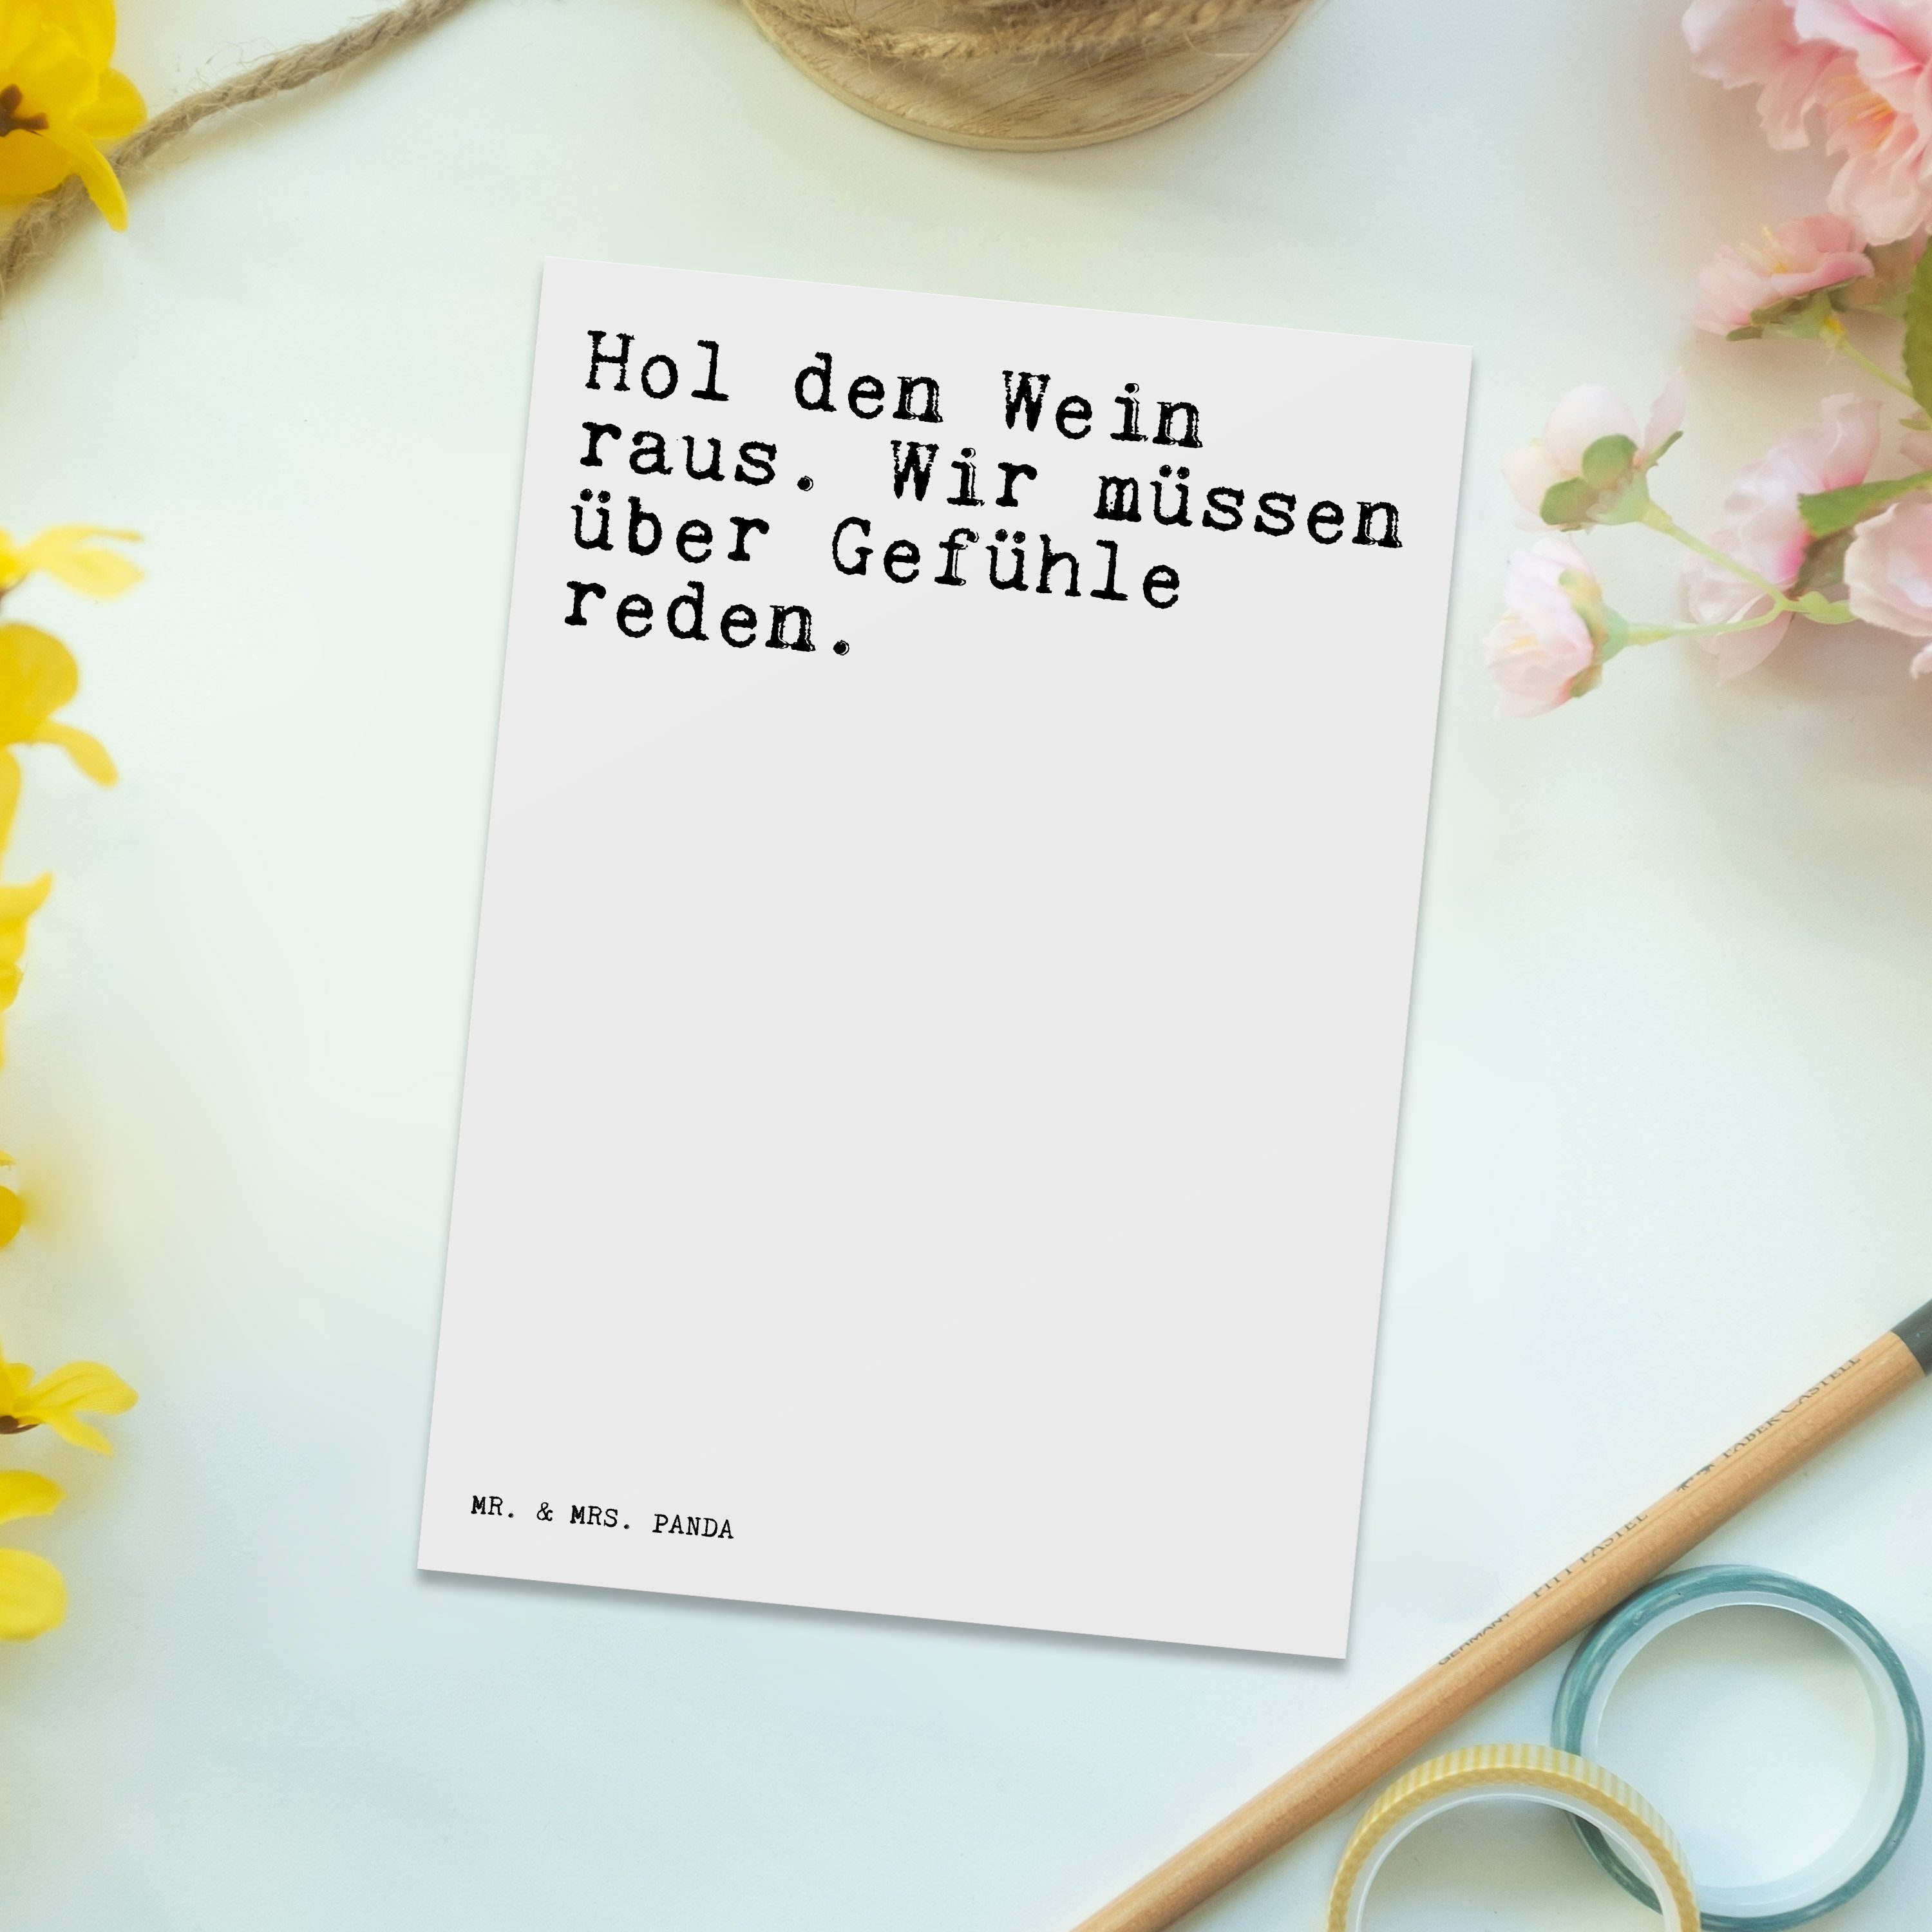 Mr. Wein Panda den & Geschenk, Mrs. Spruch - Spr Hol raus.... lustig, - Weiß Genießer, Postkarte